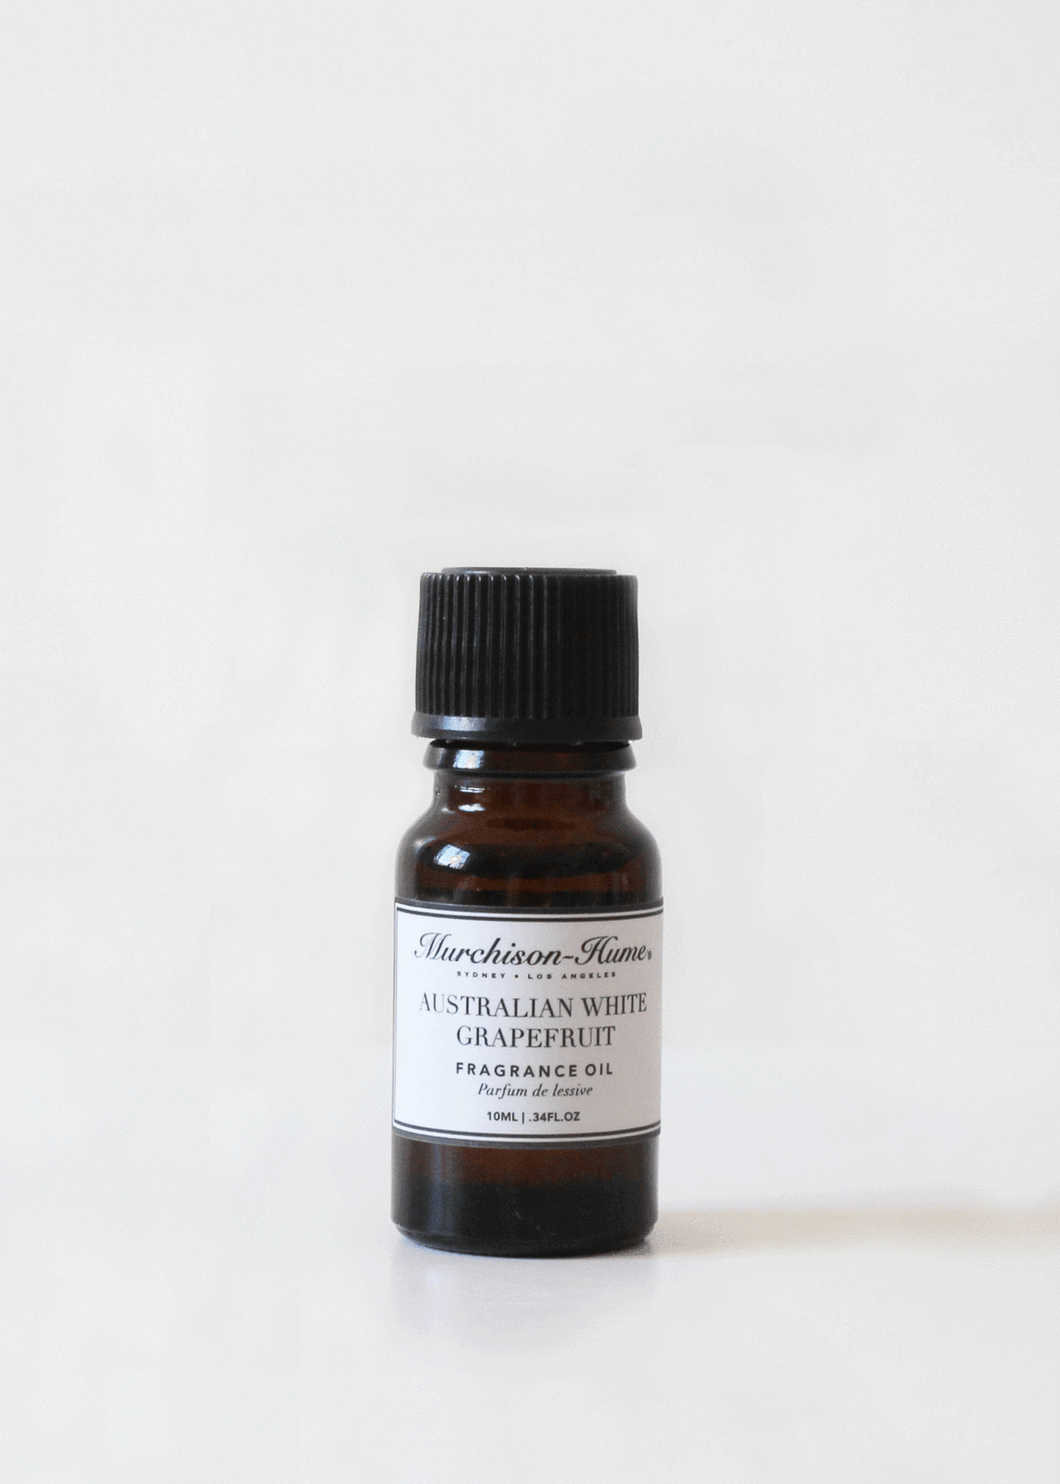 Murchison-Hume Australian White Grapefruit Fragrance Oil